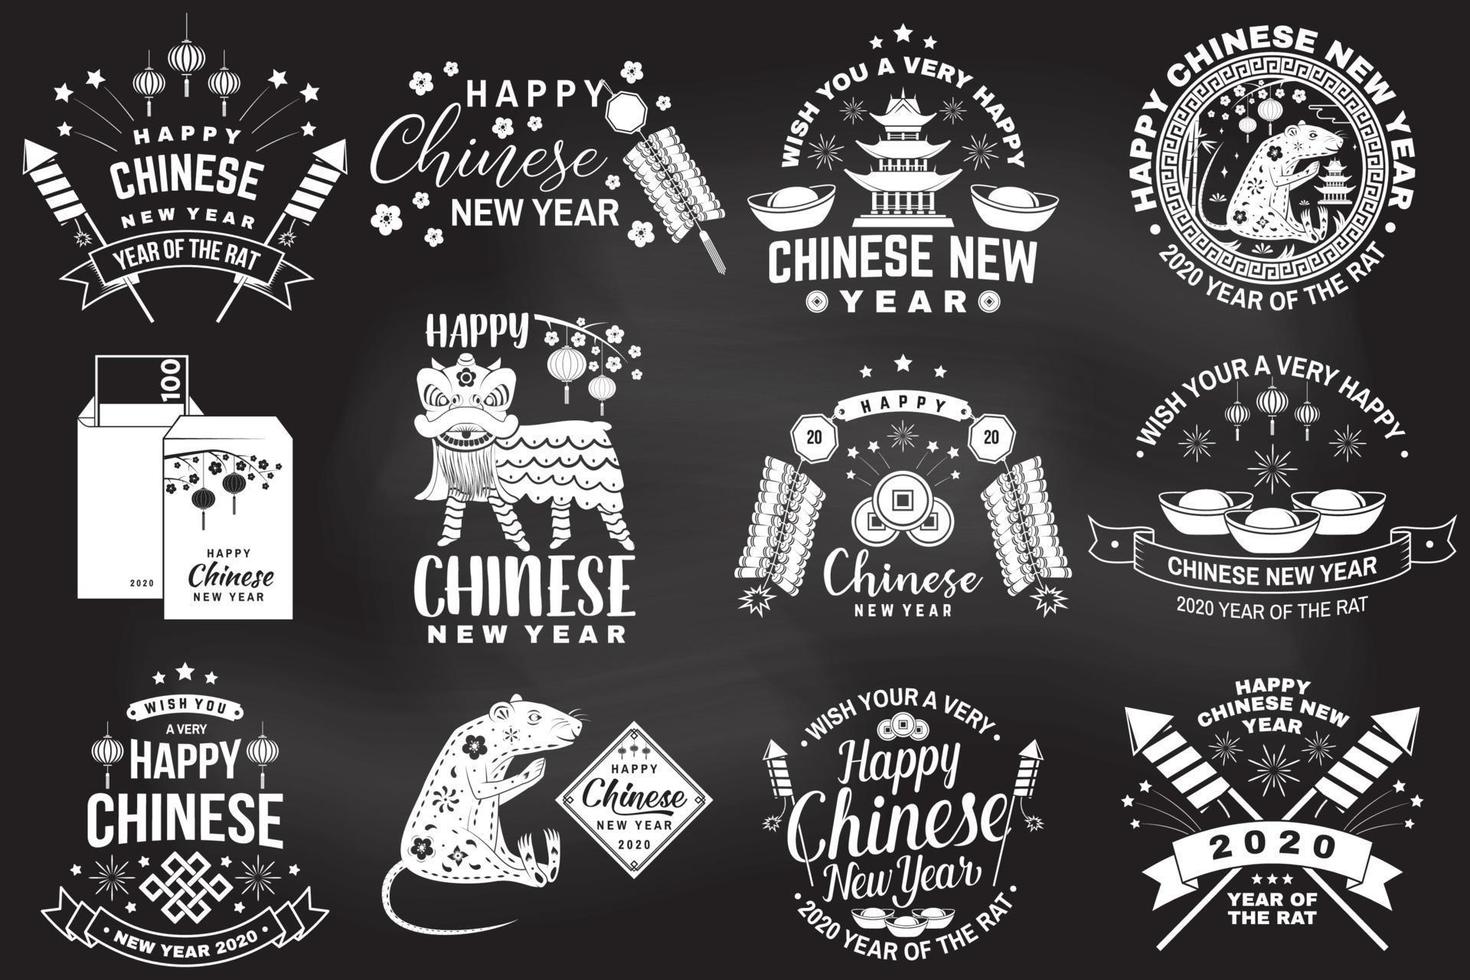 feliz ano novo chinês na lousa. cartão postal clássico de felicitação do ano novo chinês. banner para modelo de site vetor